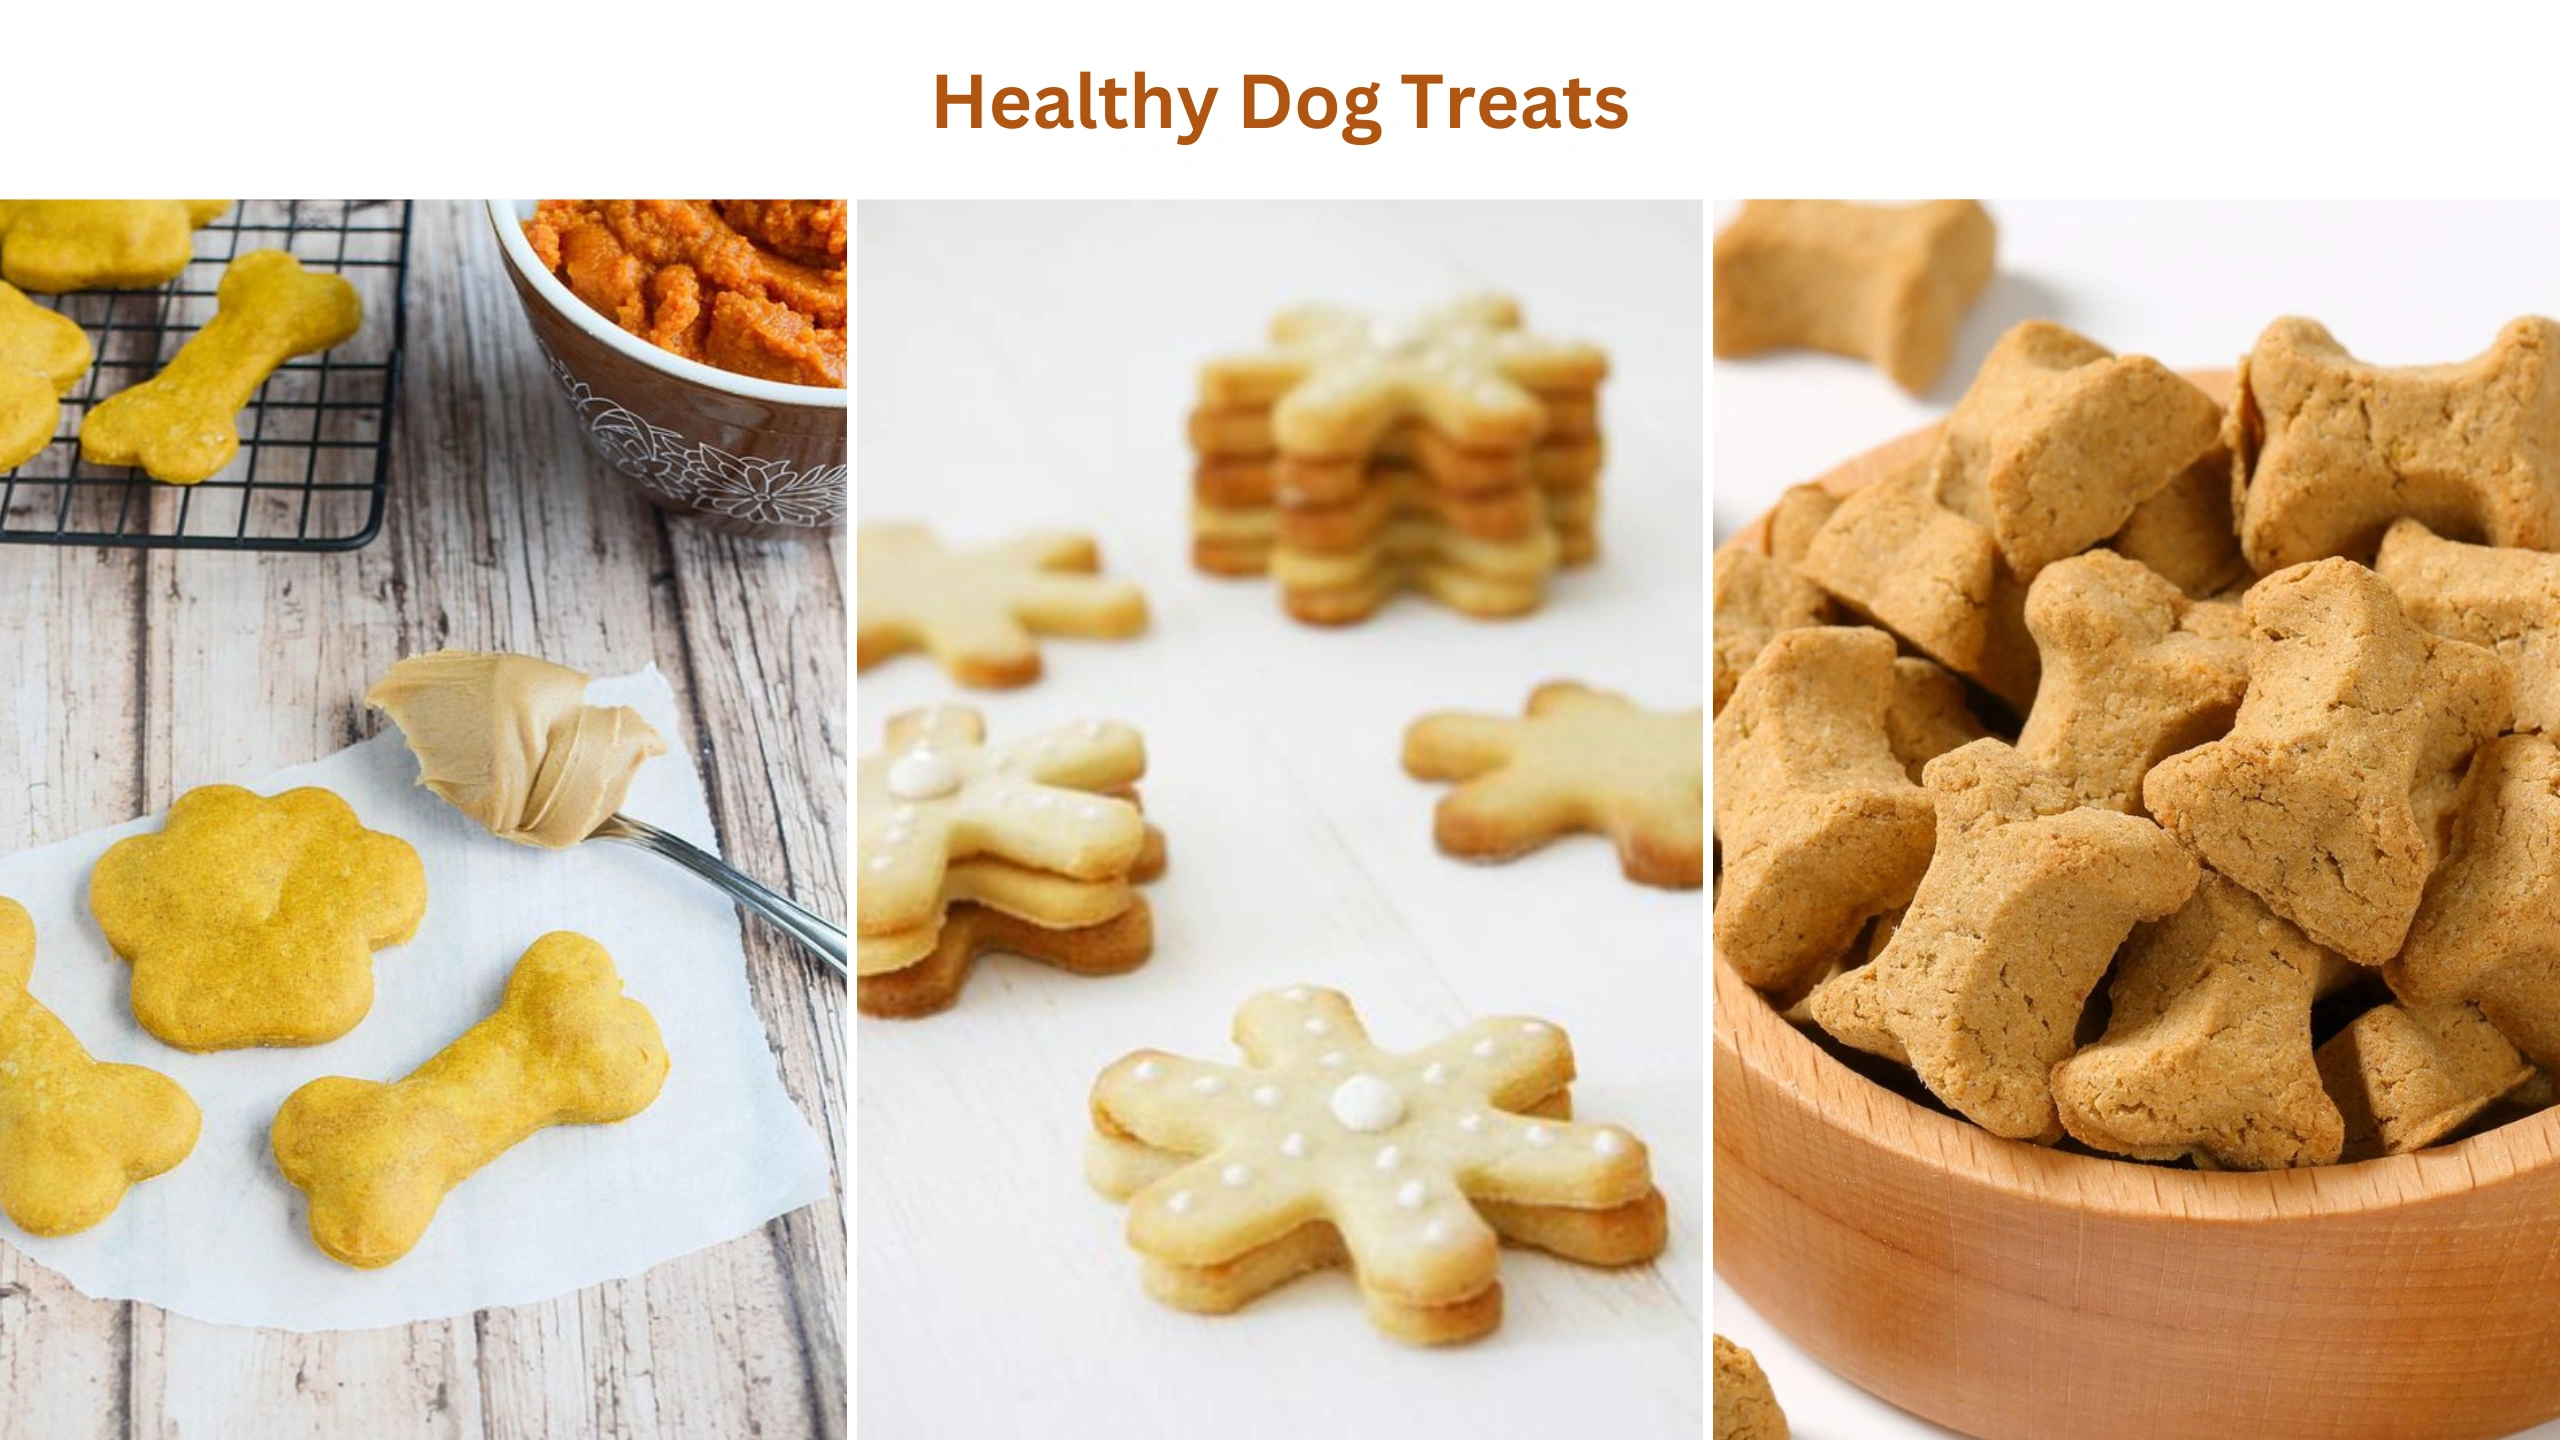 Healthy dog treats